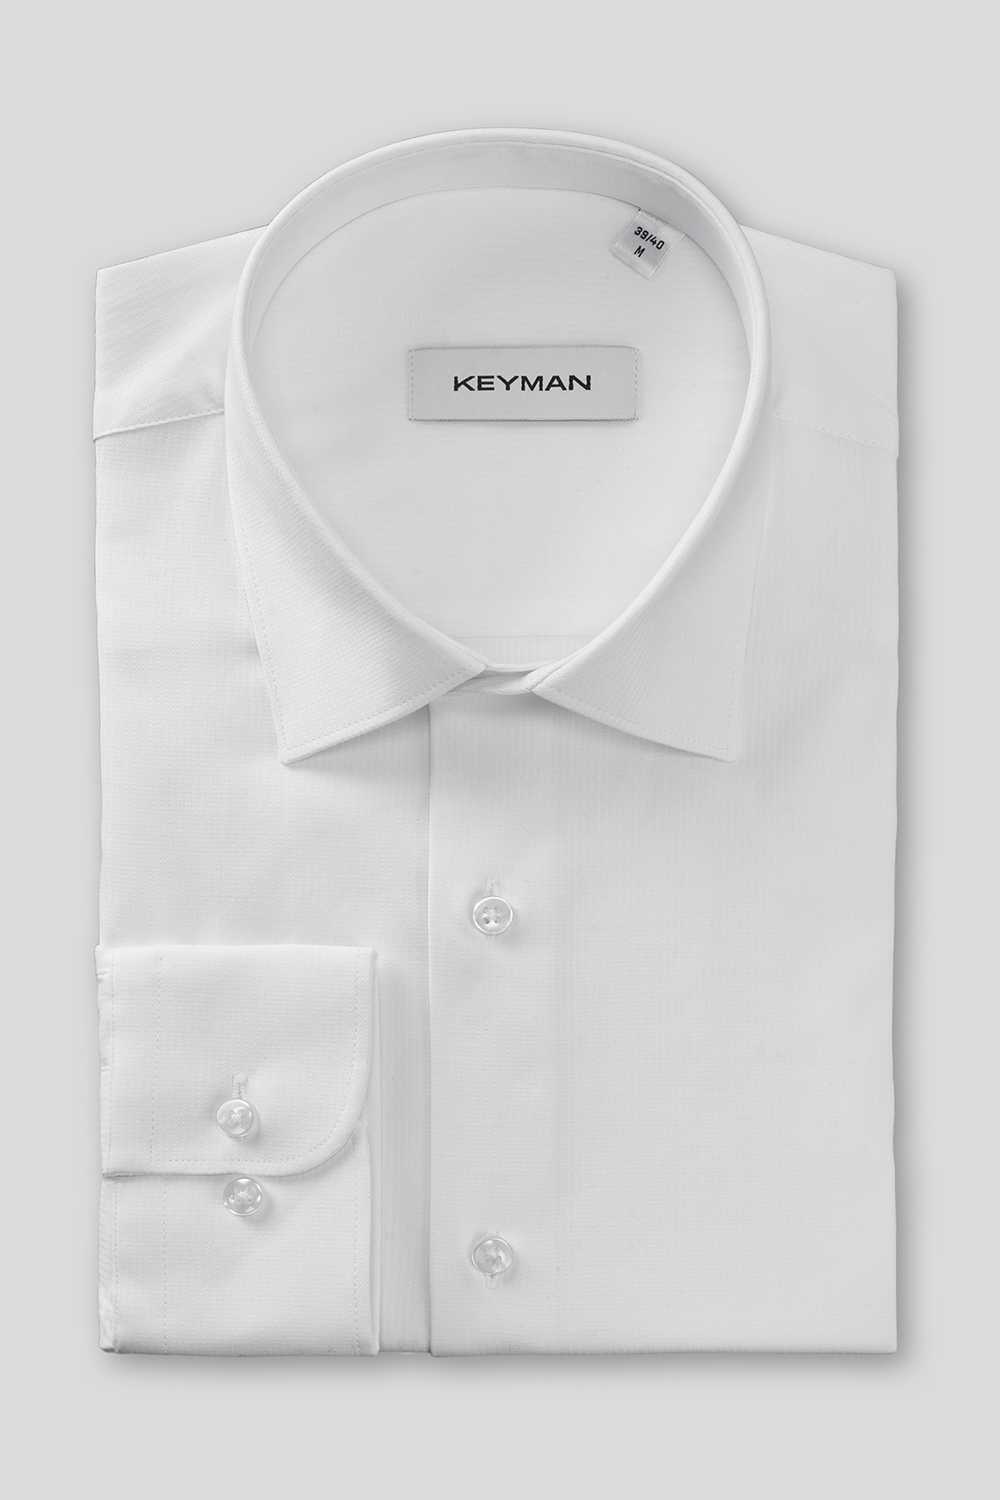 Рубашка мужская белая фактурная в мелкую полоску, классика воротник